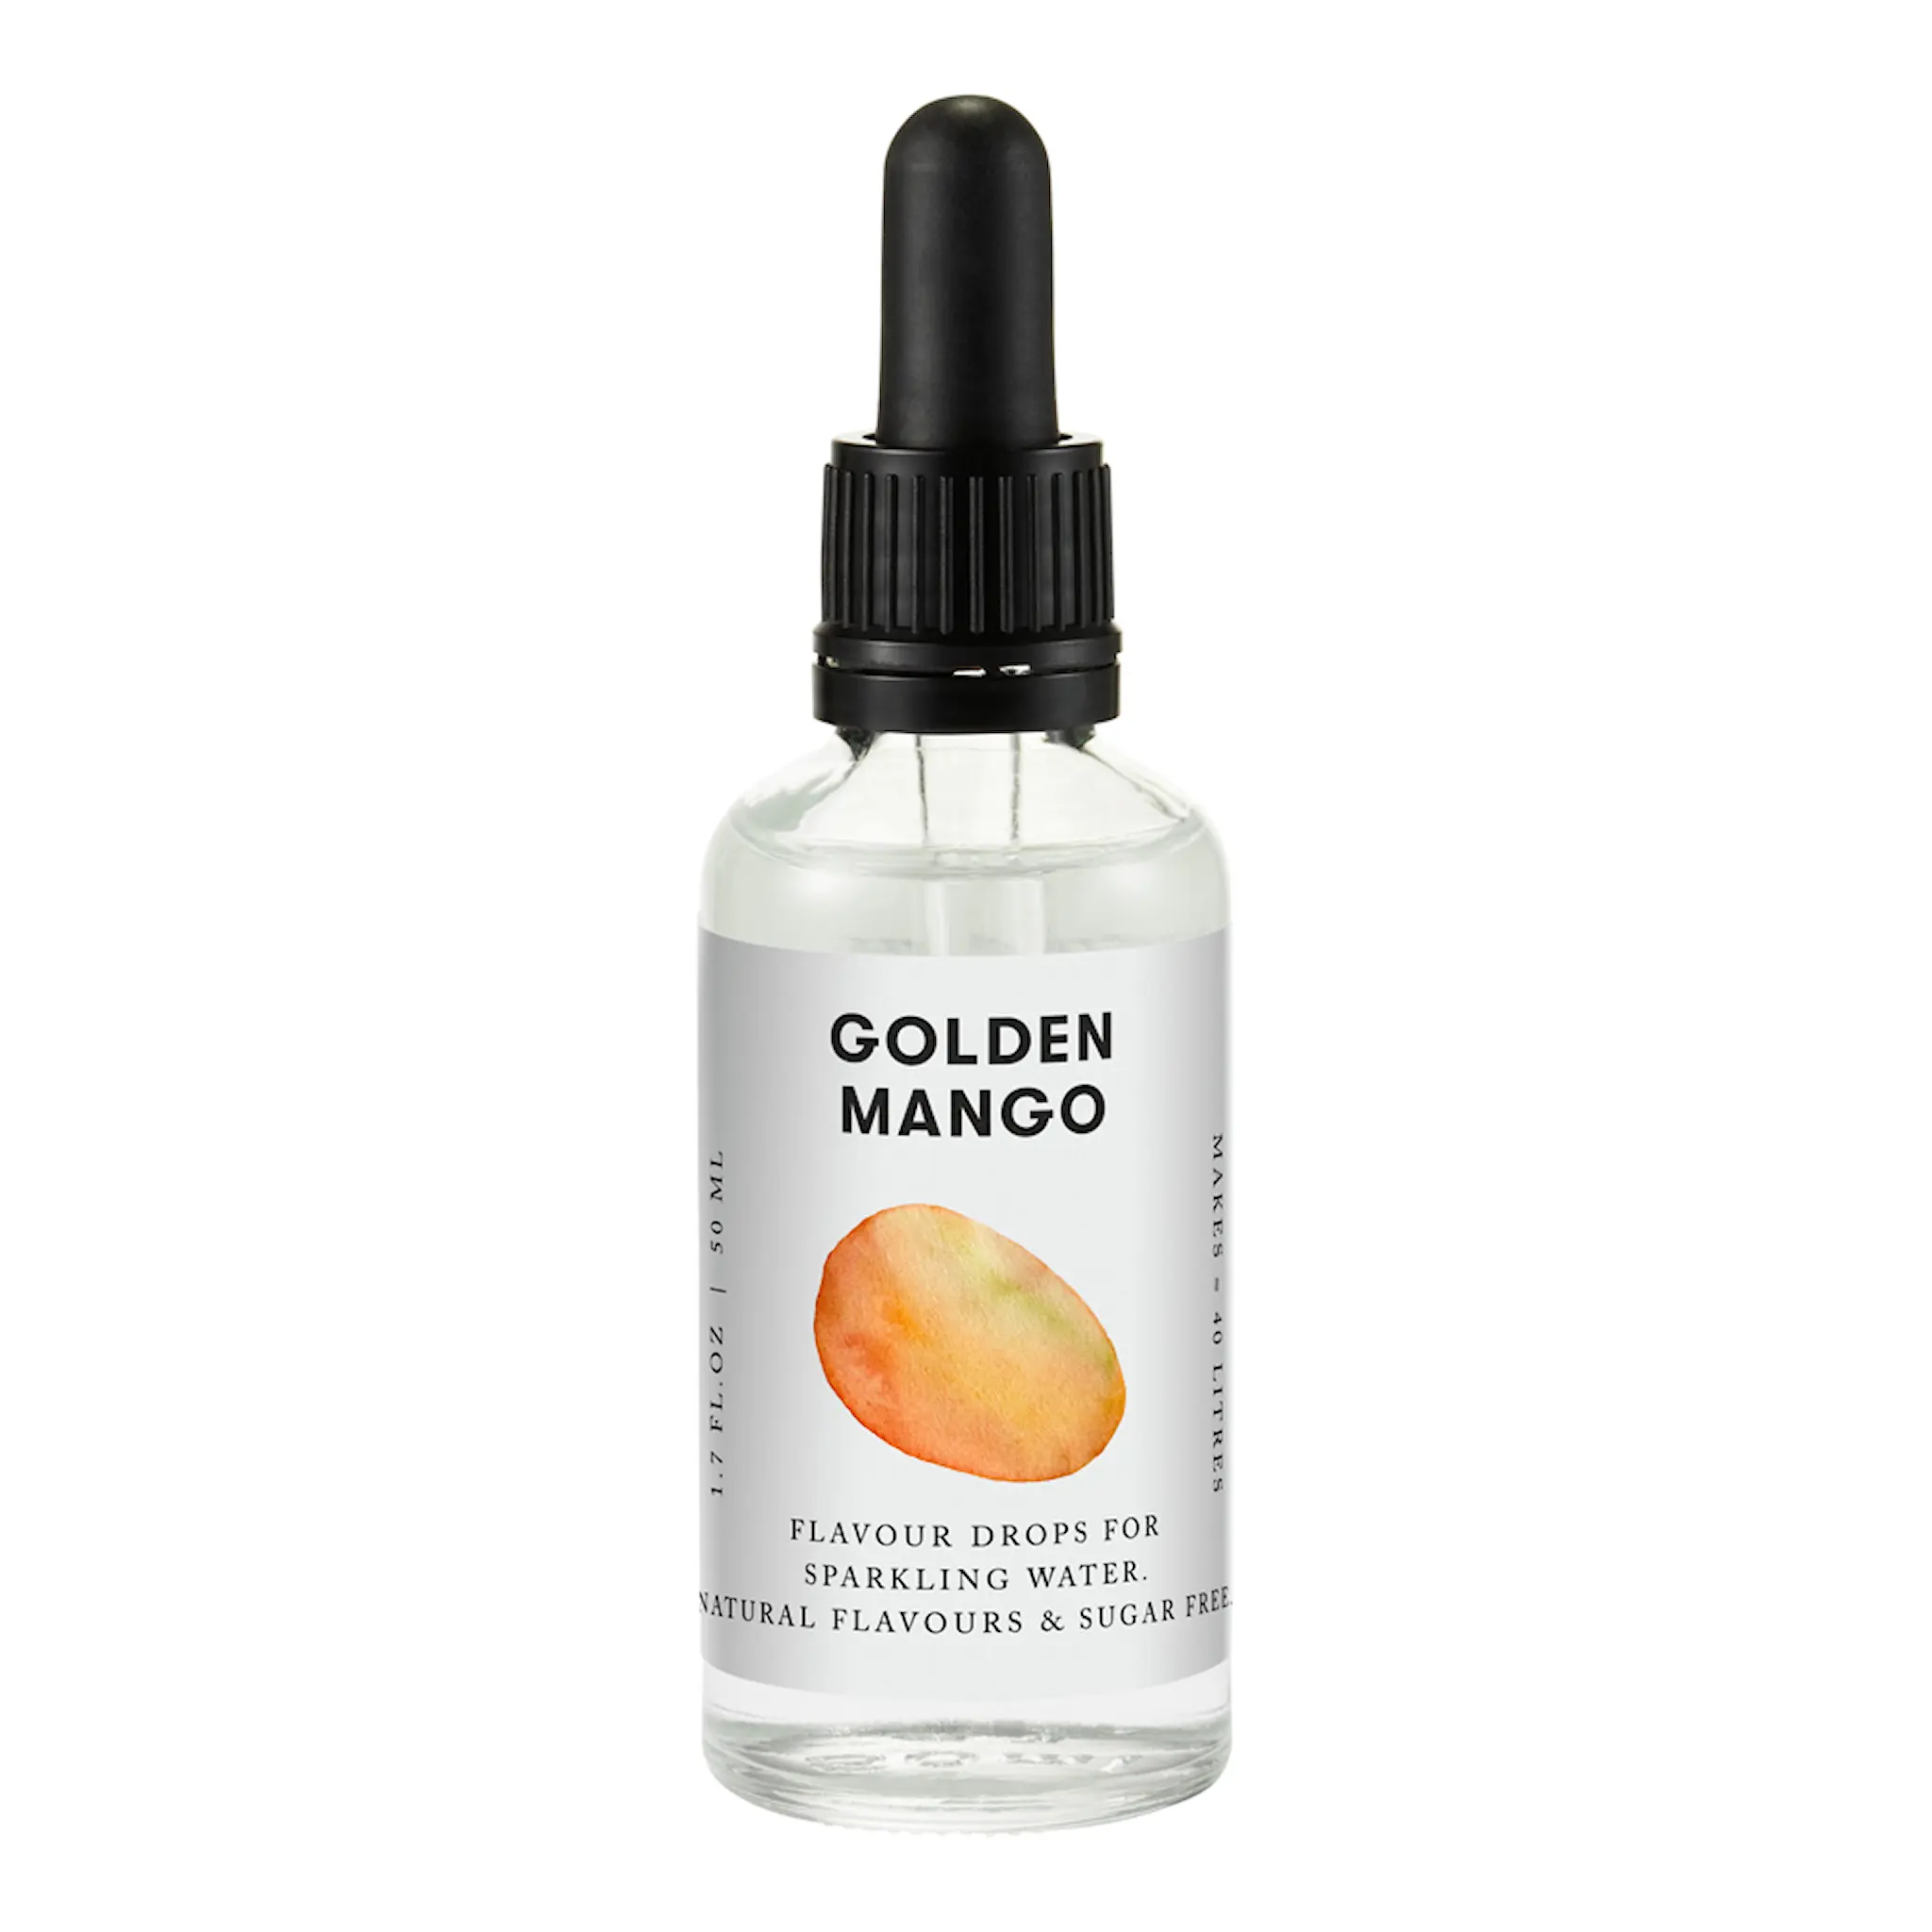 Aarke Aarke Flavour Drops 50 ml Golden Mango